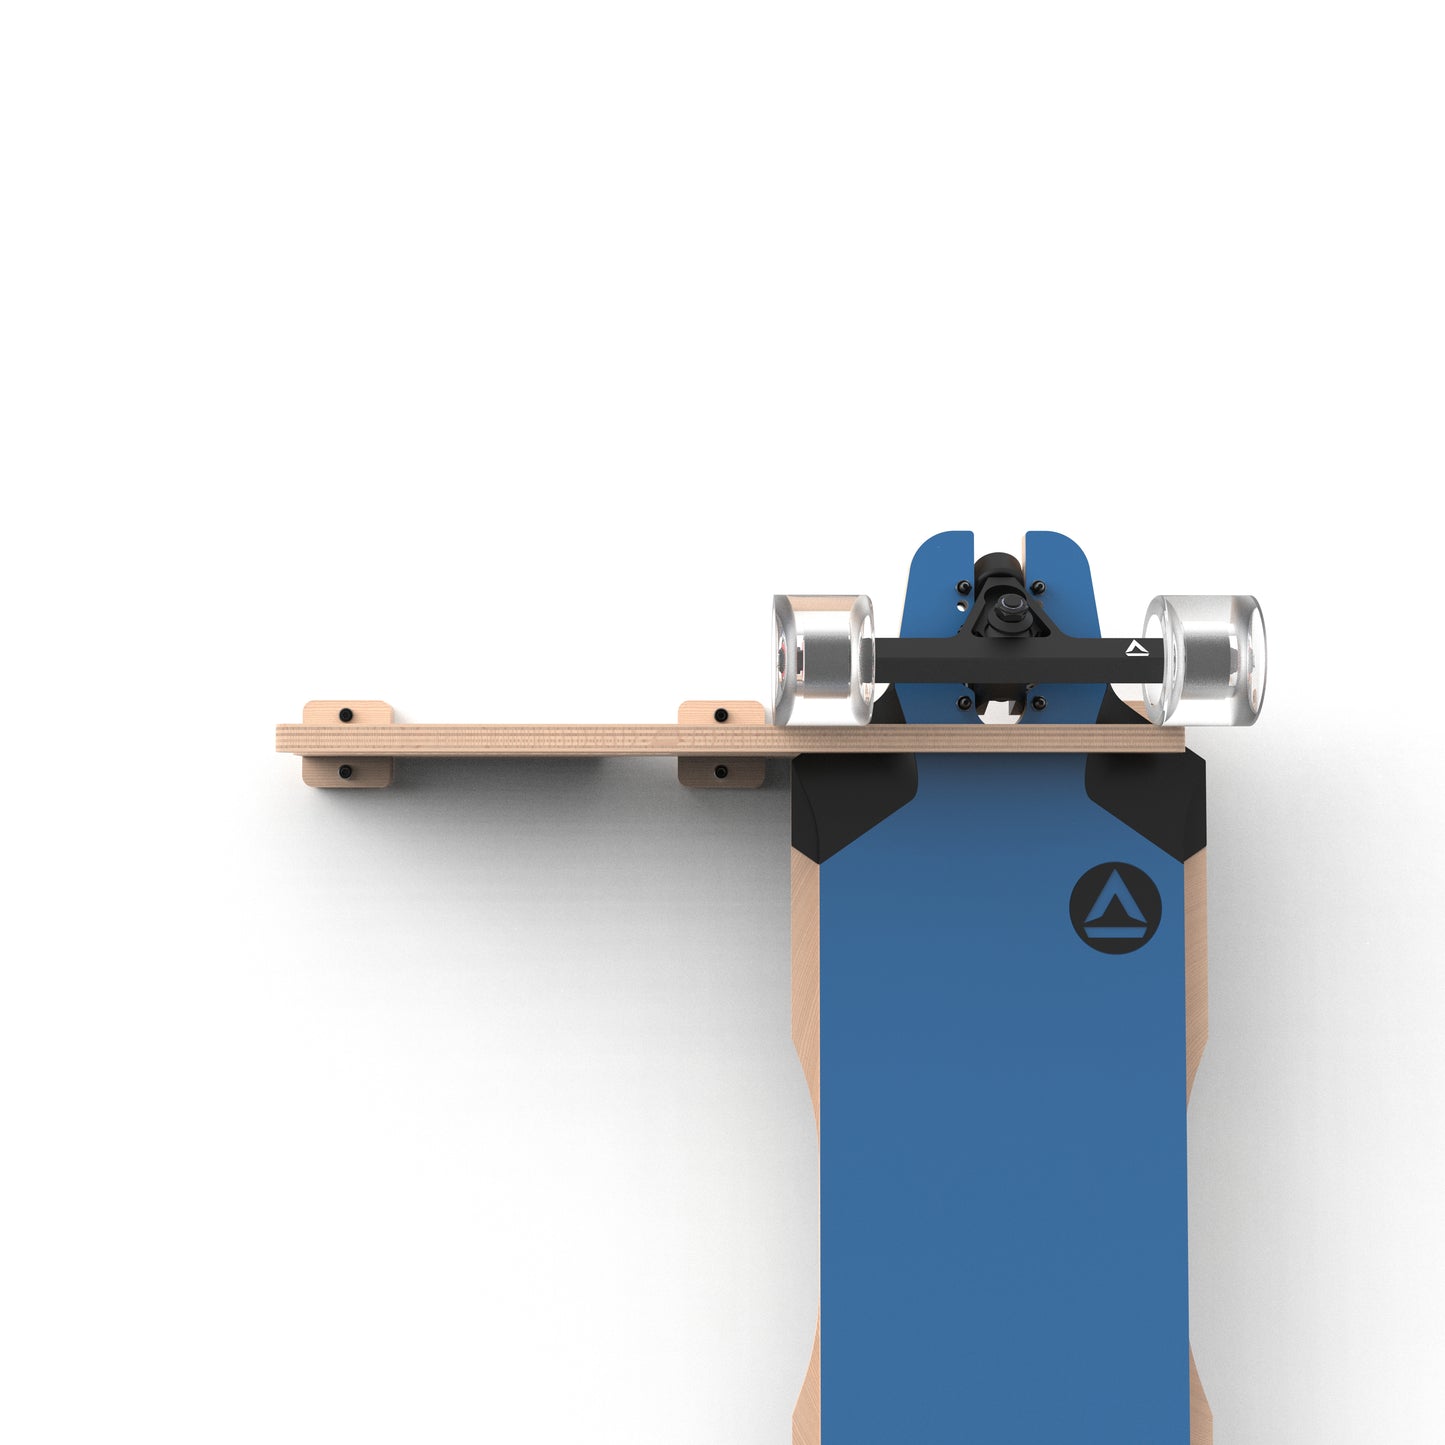 Skateboard / Longboard Wall Mount - Double Board Hanger